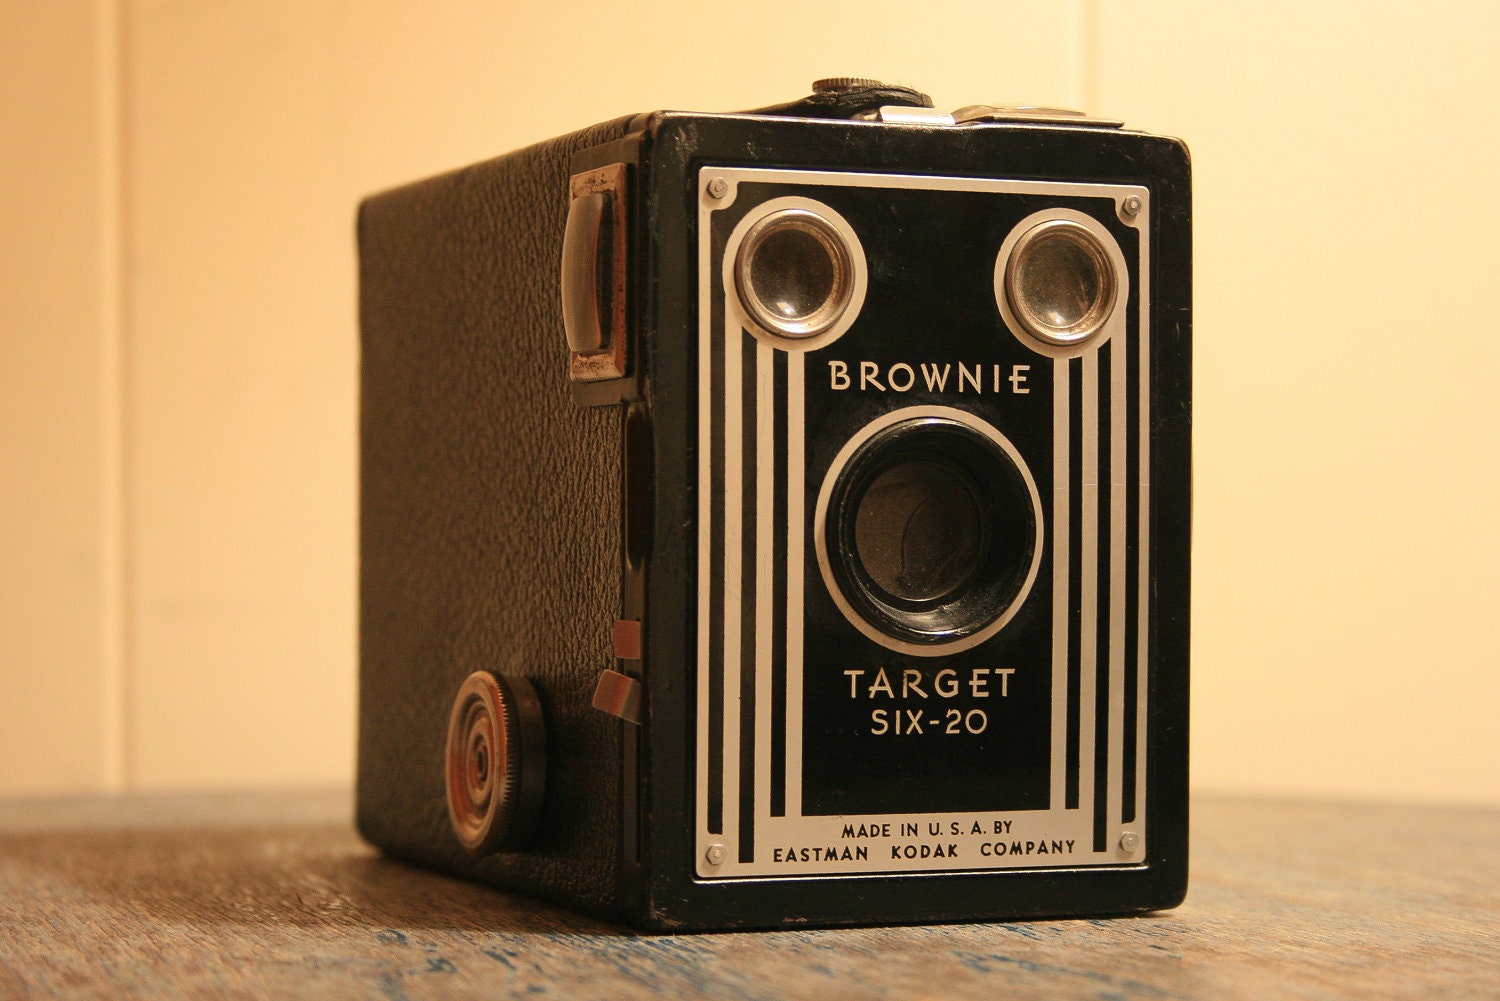 Vintage Kodak Brownie Target Six-16 Camera 1940s Black